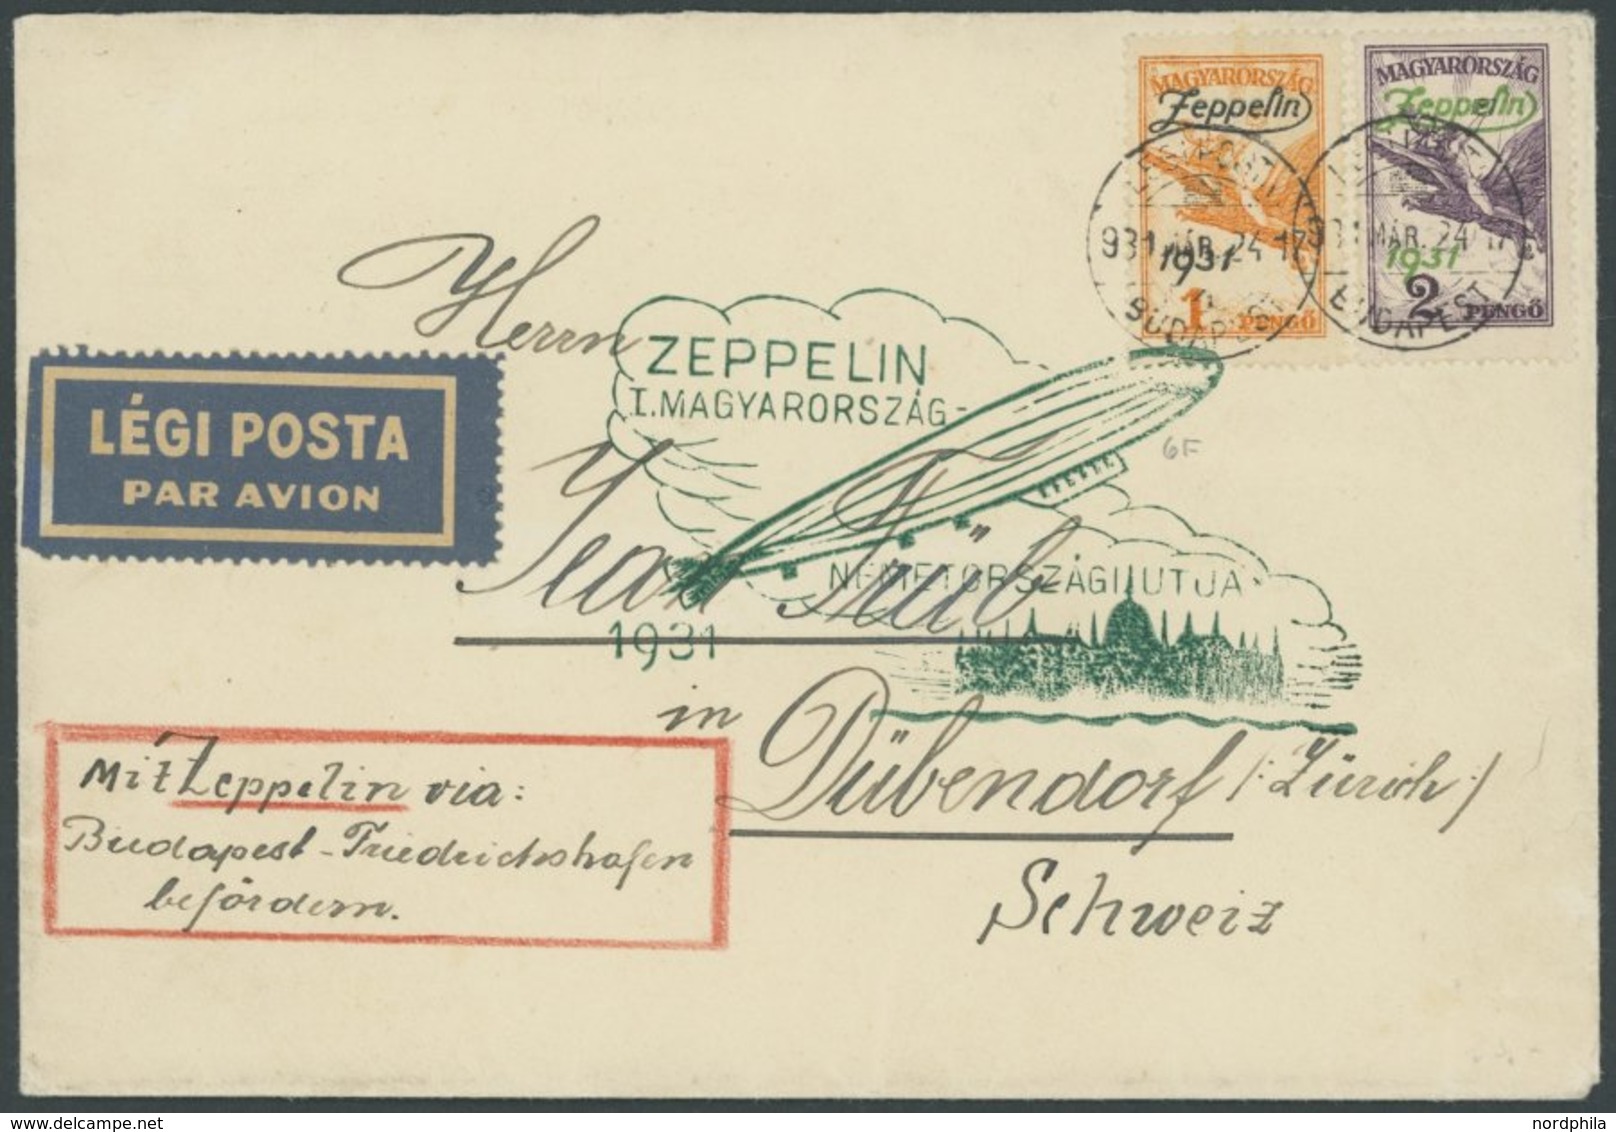 ZEPPELINPOST 103cI BRIEF, 1931, Ungarnfahrt, Ungarische Post, Budapest-Friedrichshafen, Mit Beiden Zeppelinmarken In Die - Correo Aéreo & Zeppelin